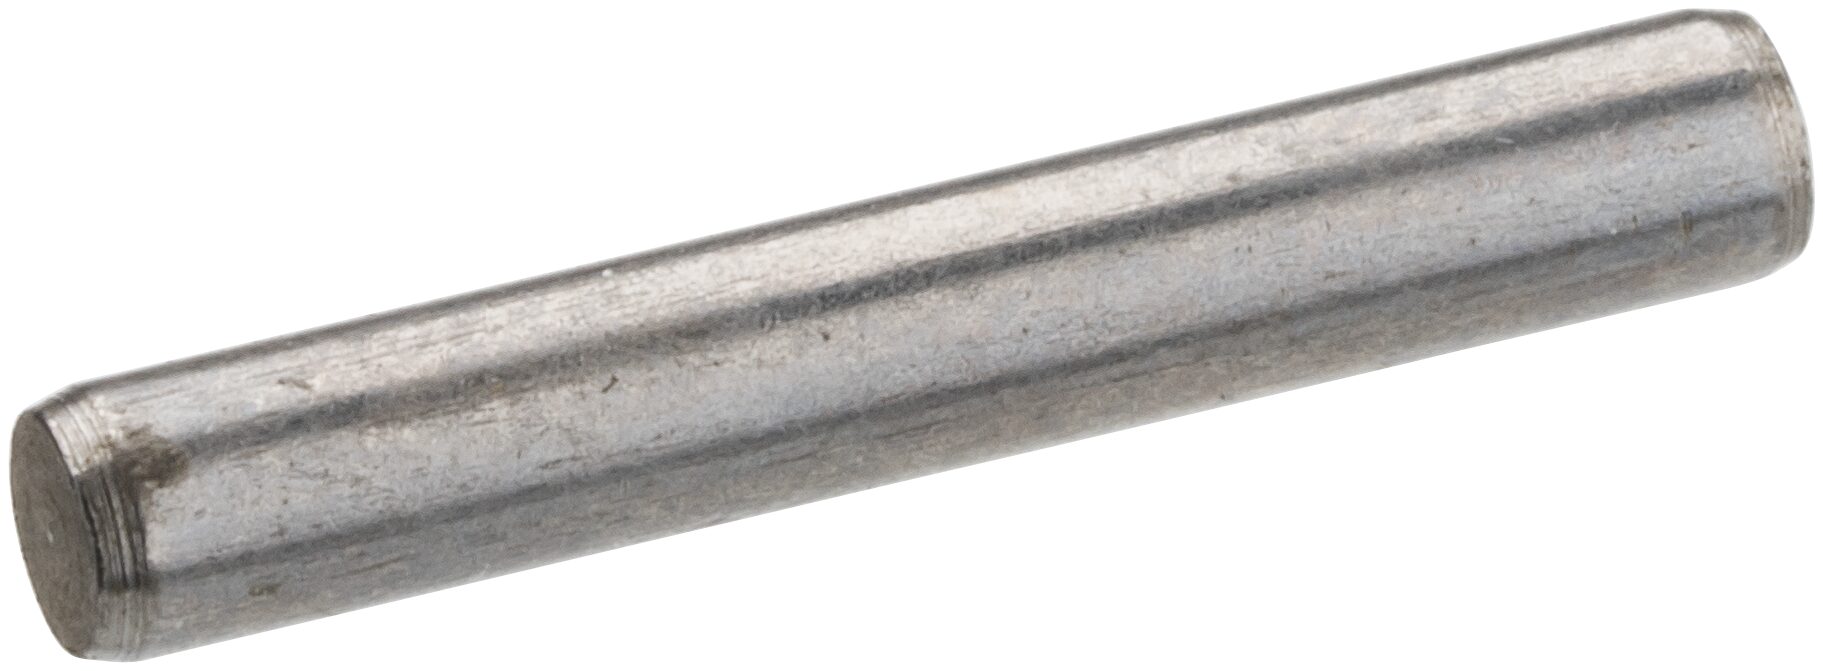 HAZET Verbindungsstift 850S-H414 · Vierkant hohl 6,3 mm (1/4 Zoll) · Ø 1,5 x 10